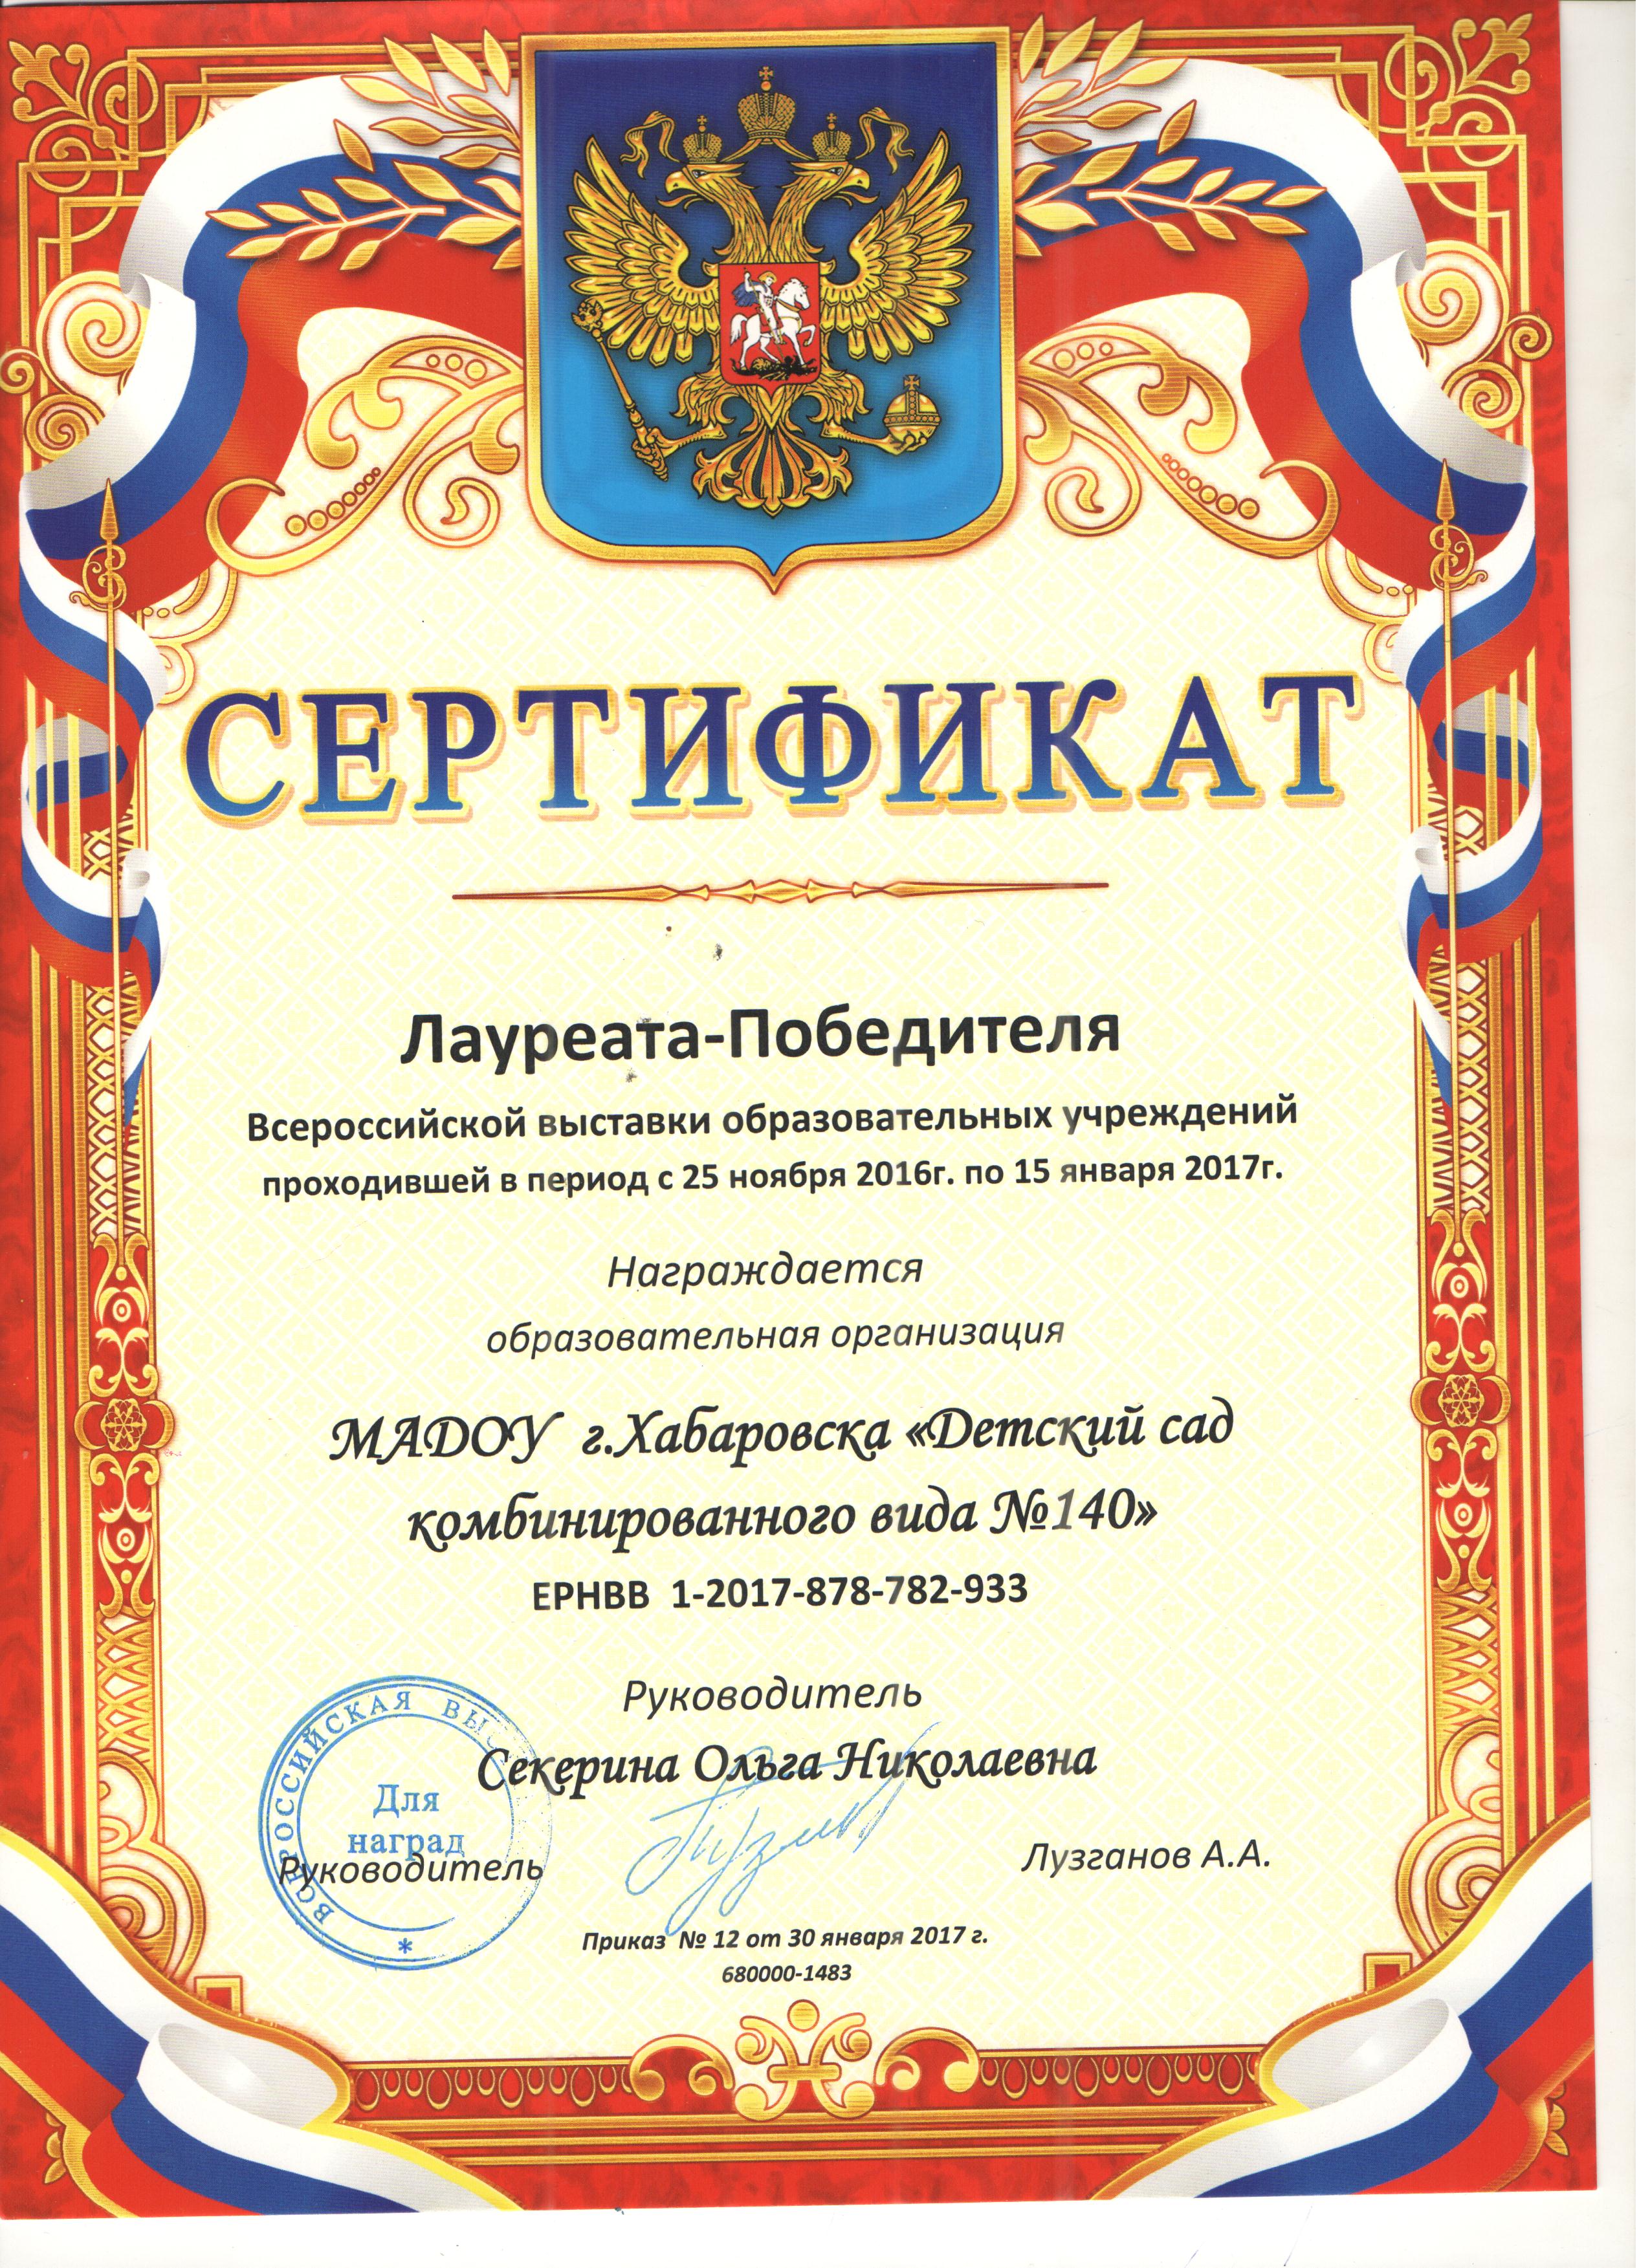 Сертификат лауреата победителя  Всероссийской выставки образовательных учреждений